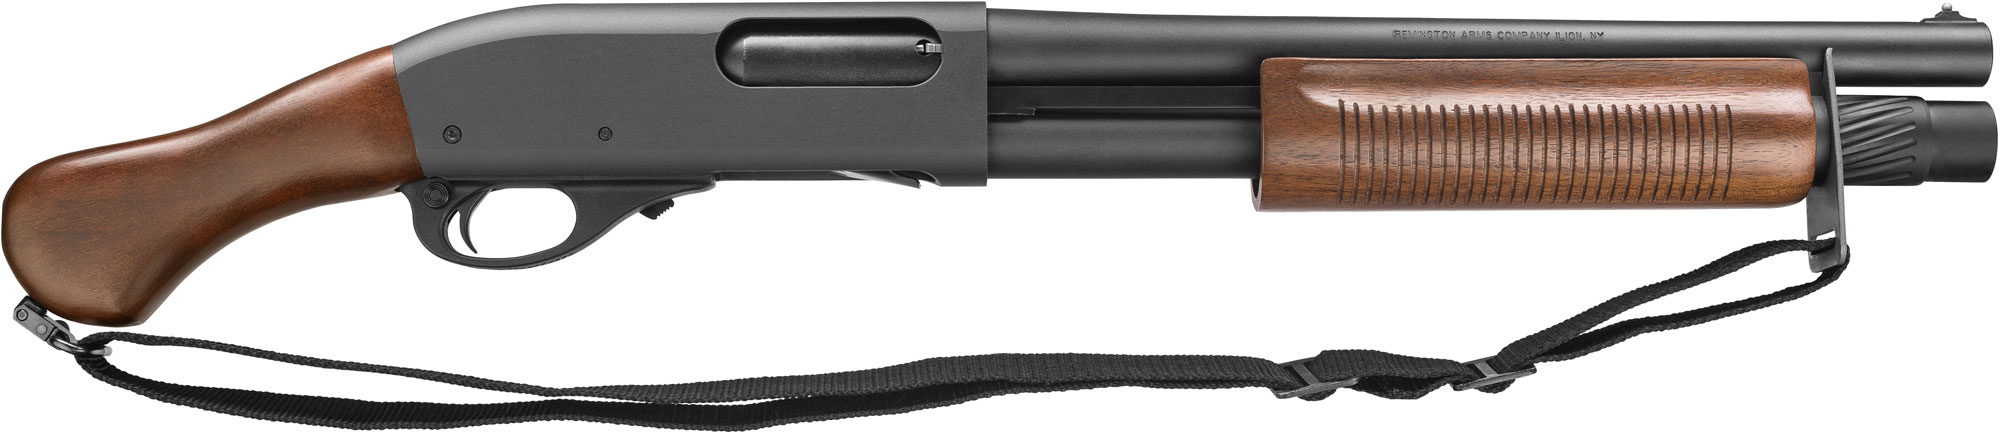 TAC-14 Hardwood | Remington